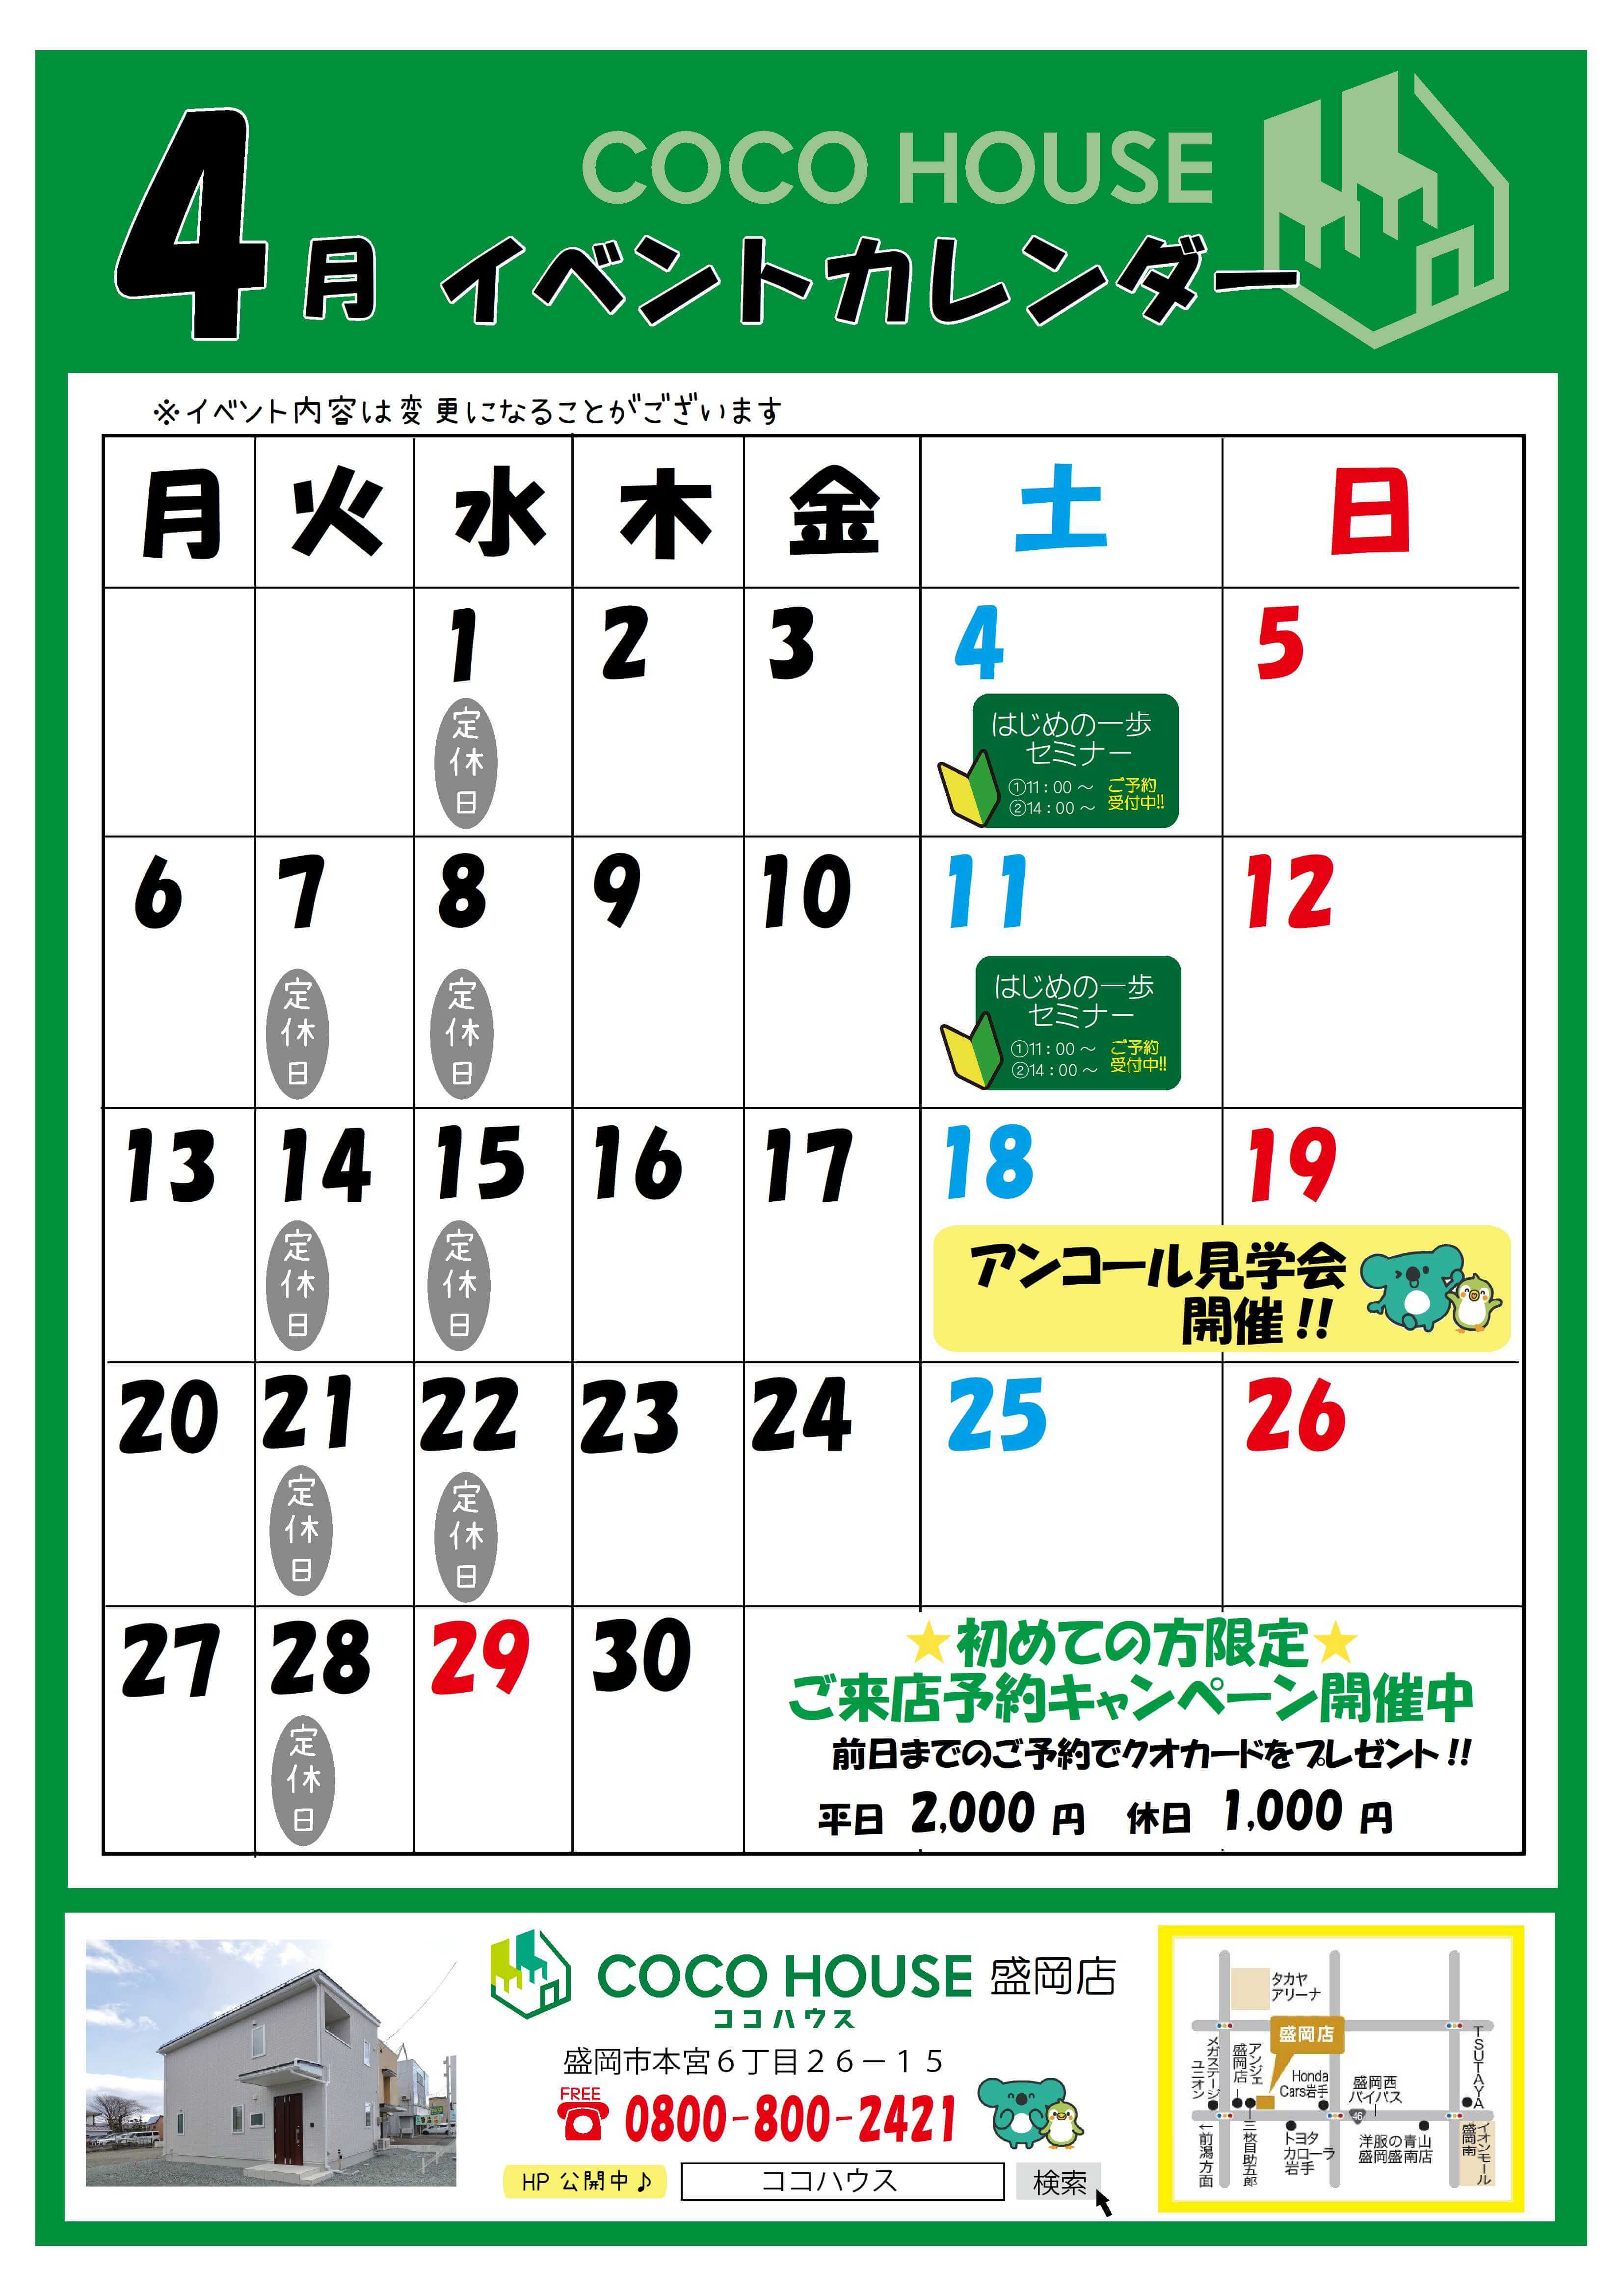 【盛岡店】4月イベントカレンダー